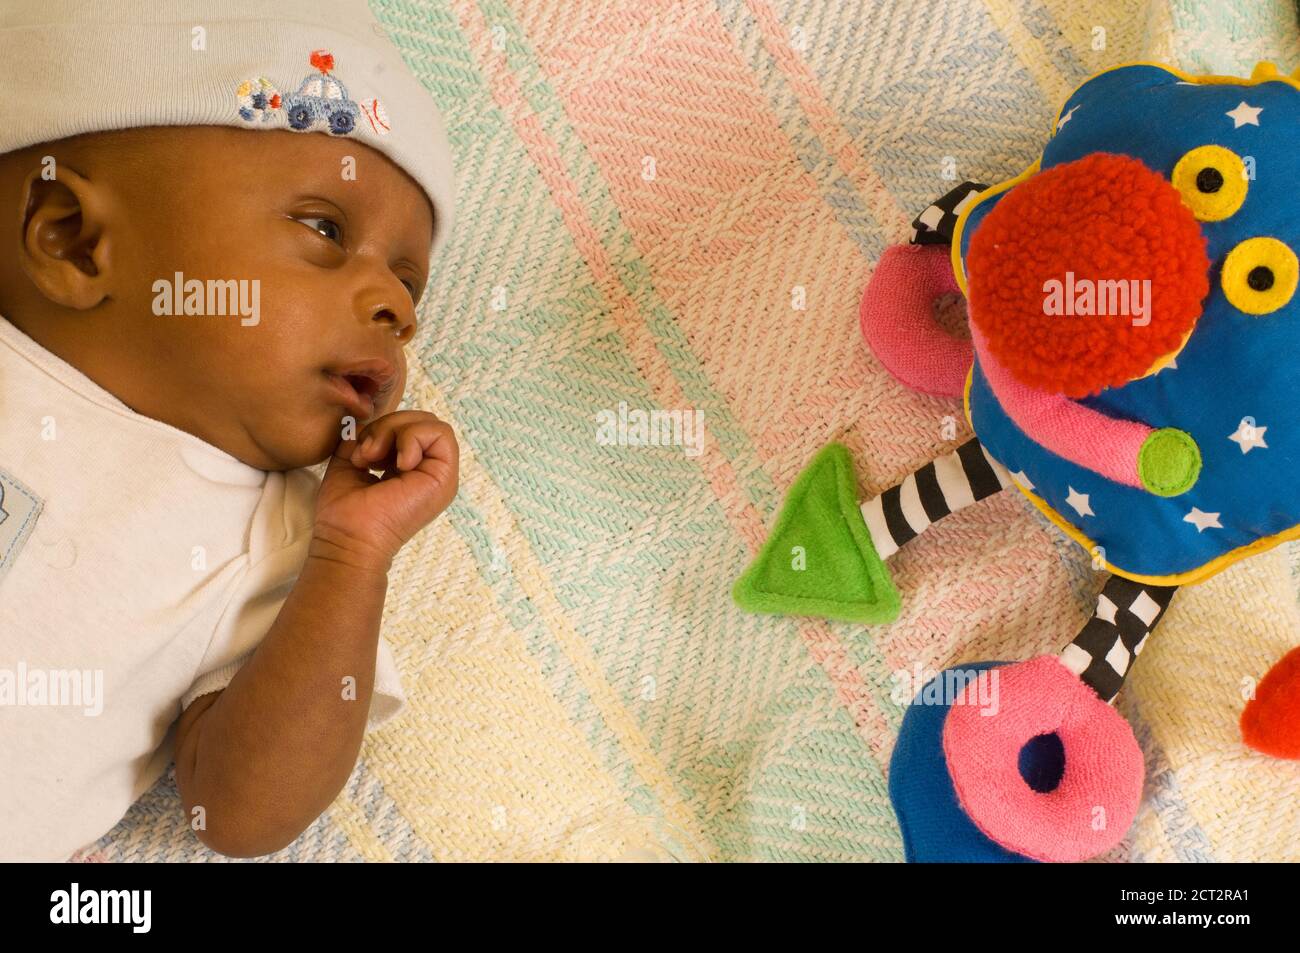 6 semaines nouveau-né bébé garçon un mois alerte prématurée regardant le jouet coloré, port de la casquette Banque D'Images